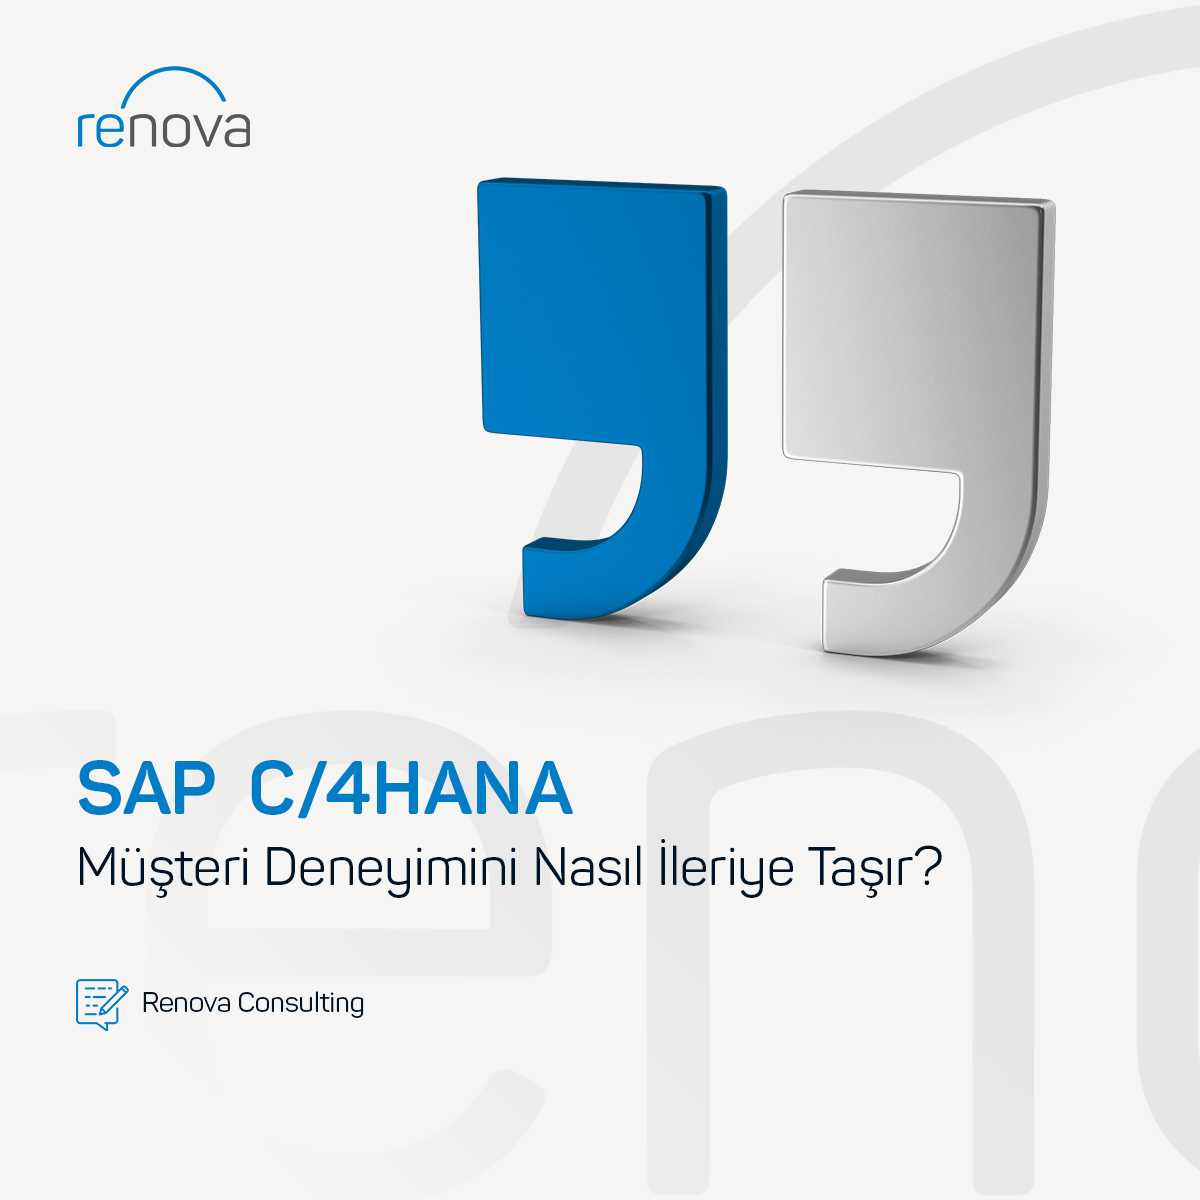 SAP C/4HANA Müşteri Deneyimini Nasıl İleriye Taşır?